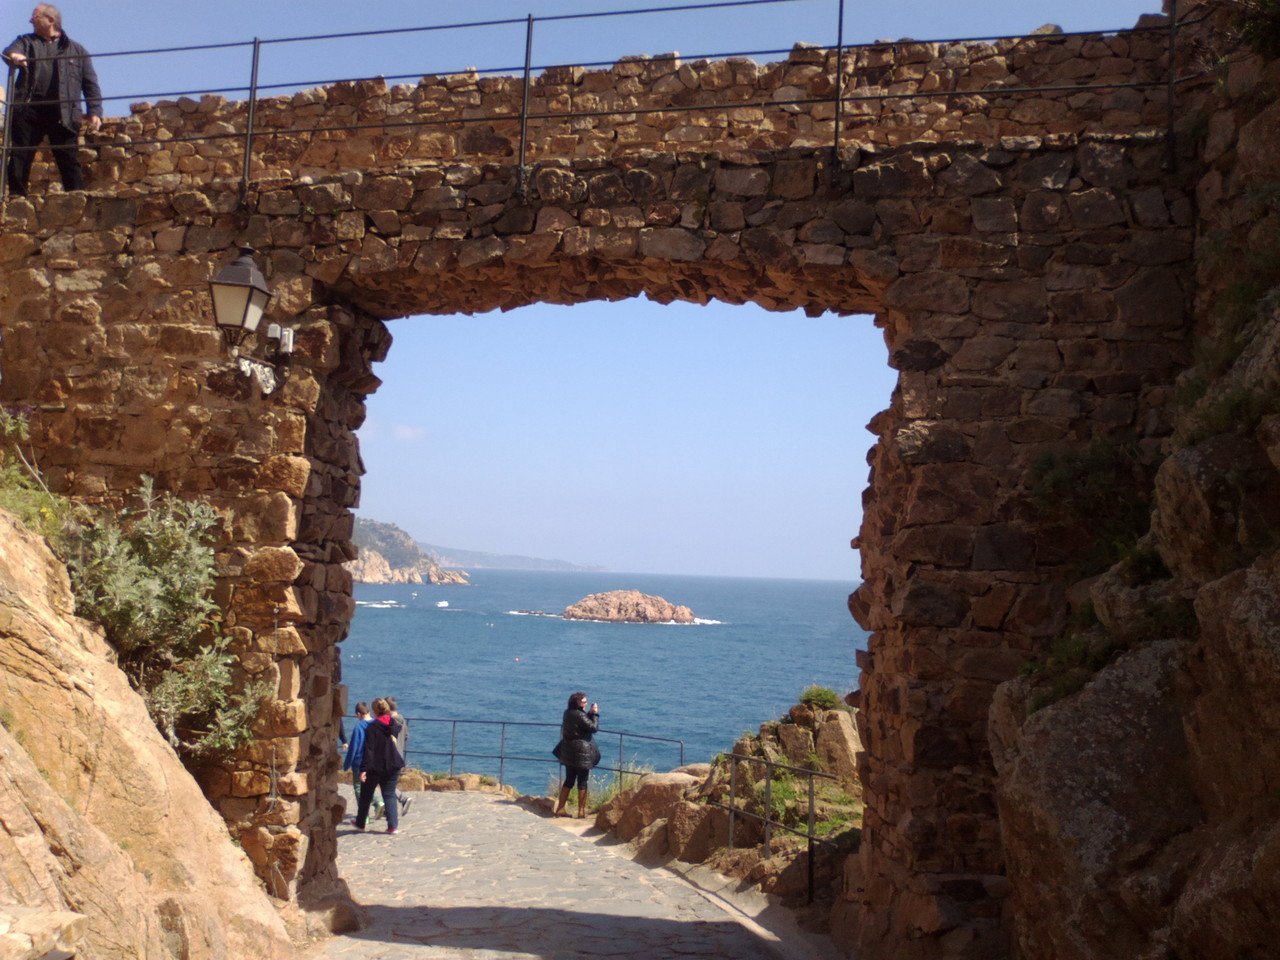 Puerta del castillo de Tossa de Mar